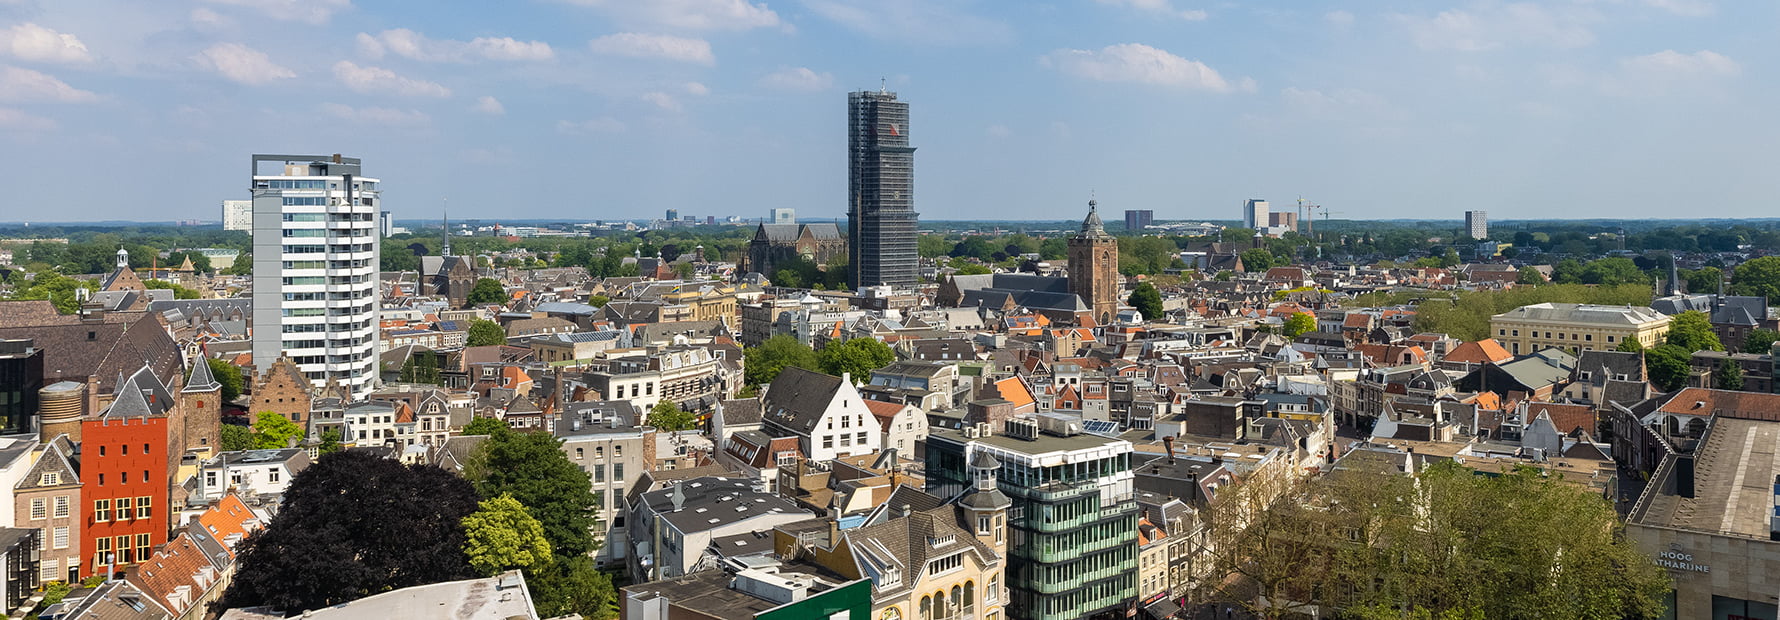 Foto uitzicht over binnenstad Utrecht